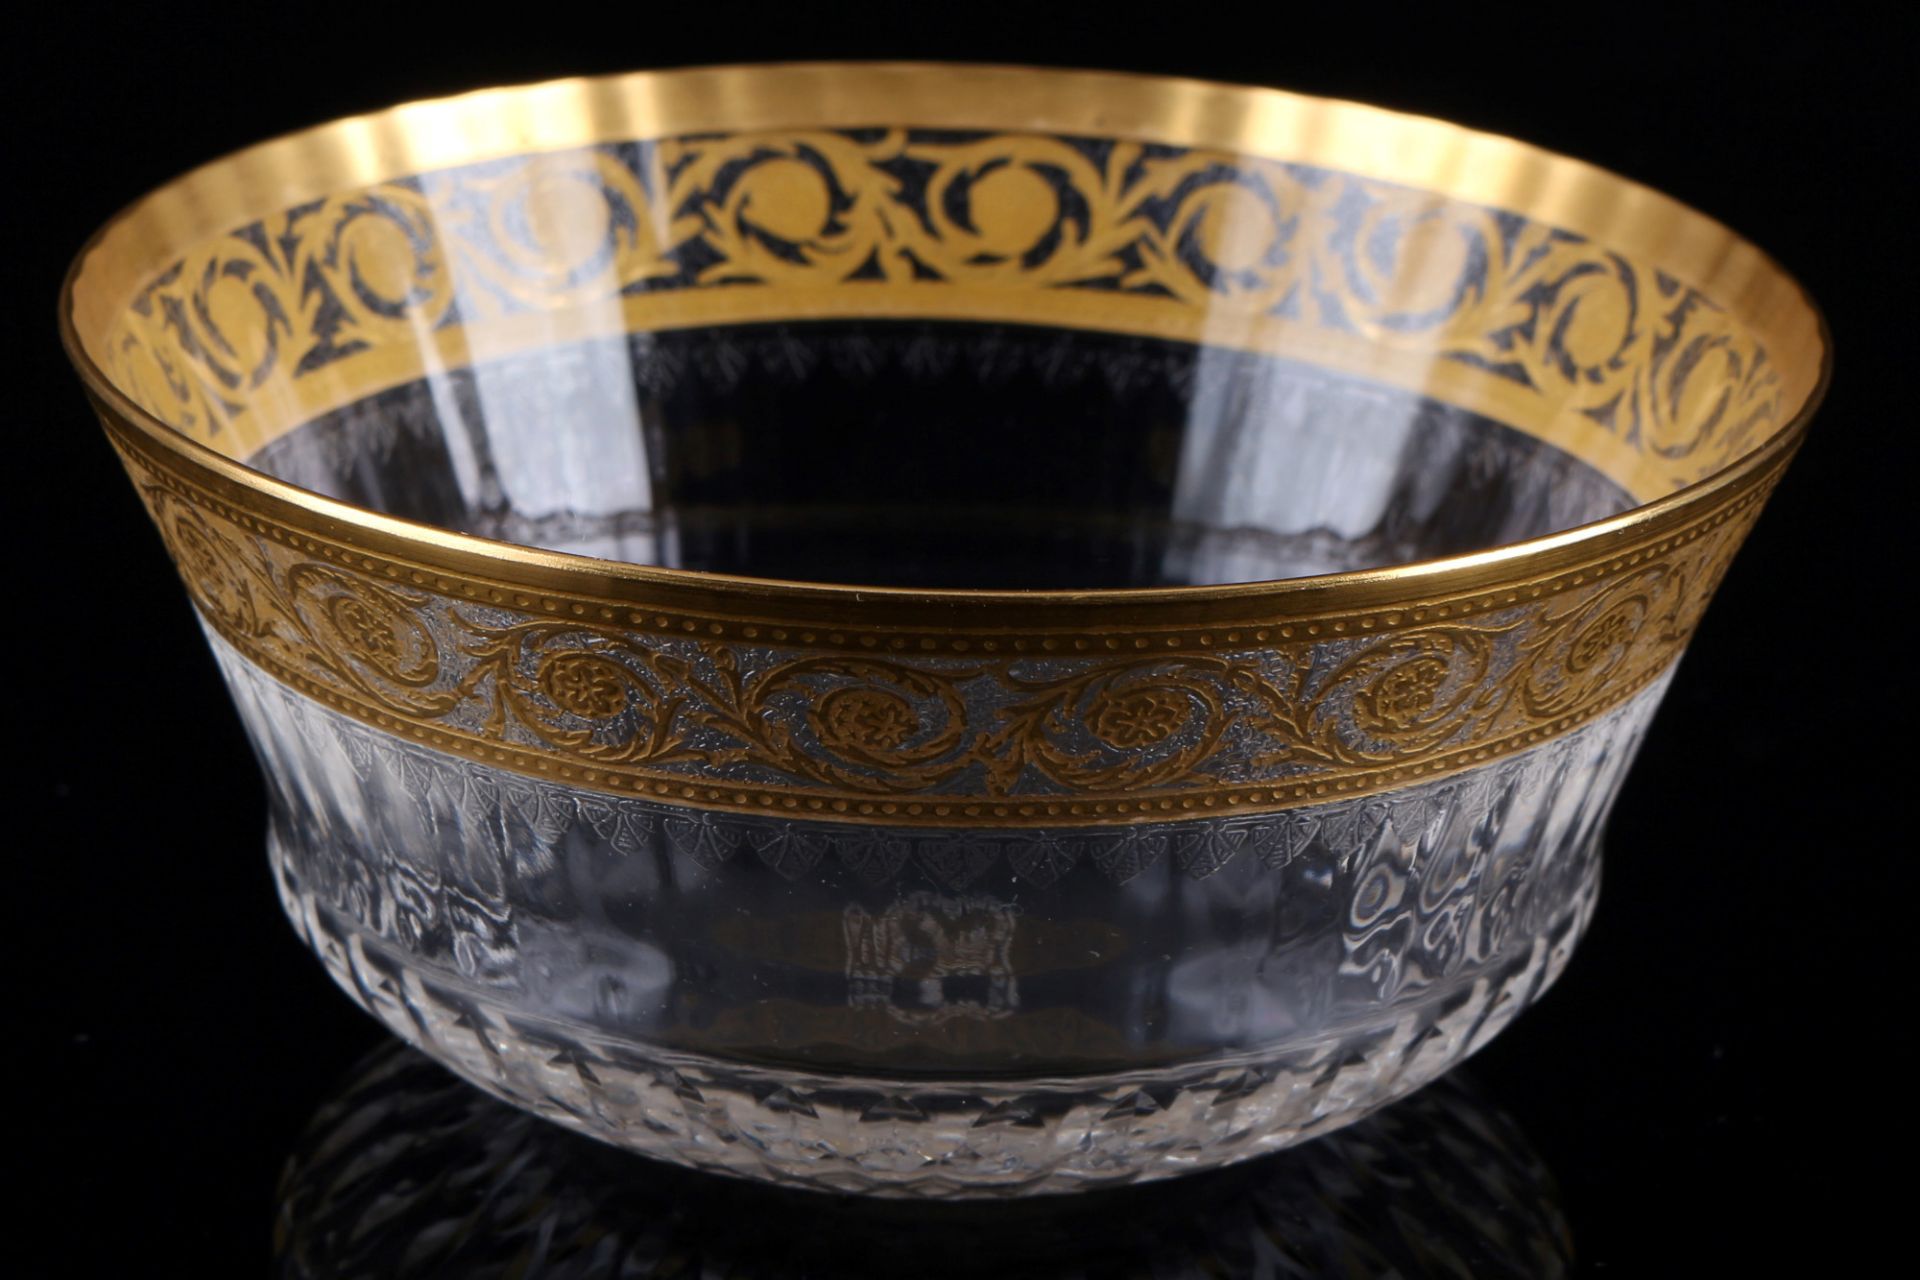 St. Louis Thistle Gold 6 finger bowls, Schalen, - Image 2 of 3